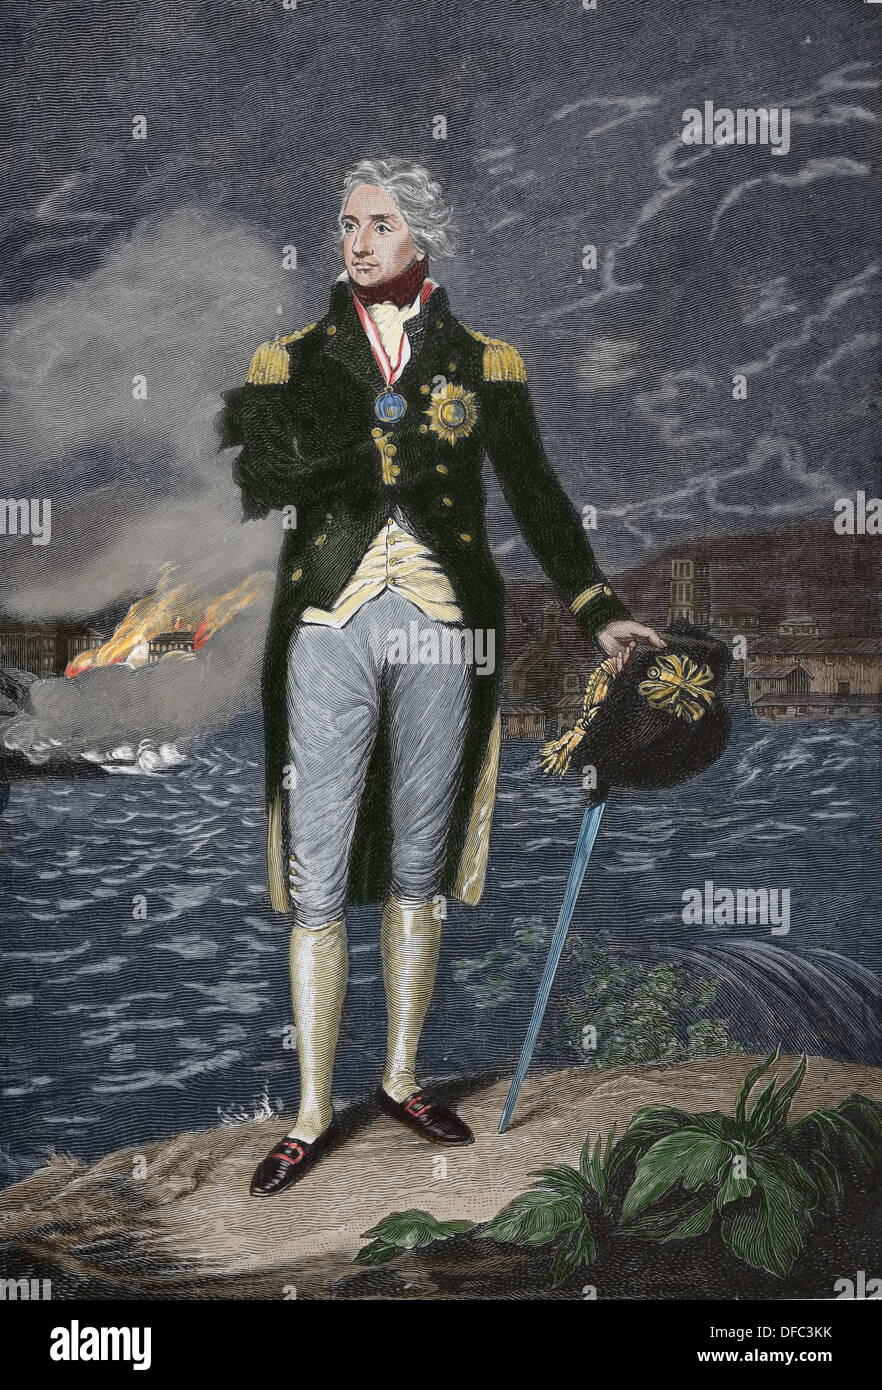 Horatio Nelson (1758 - 1805). Un officier général britannique célèbre pour son service dans la Marine royale. La gravure. Banque D'Images